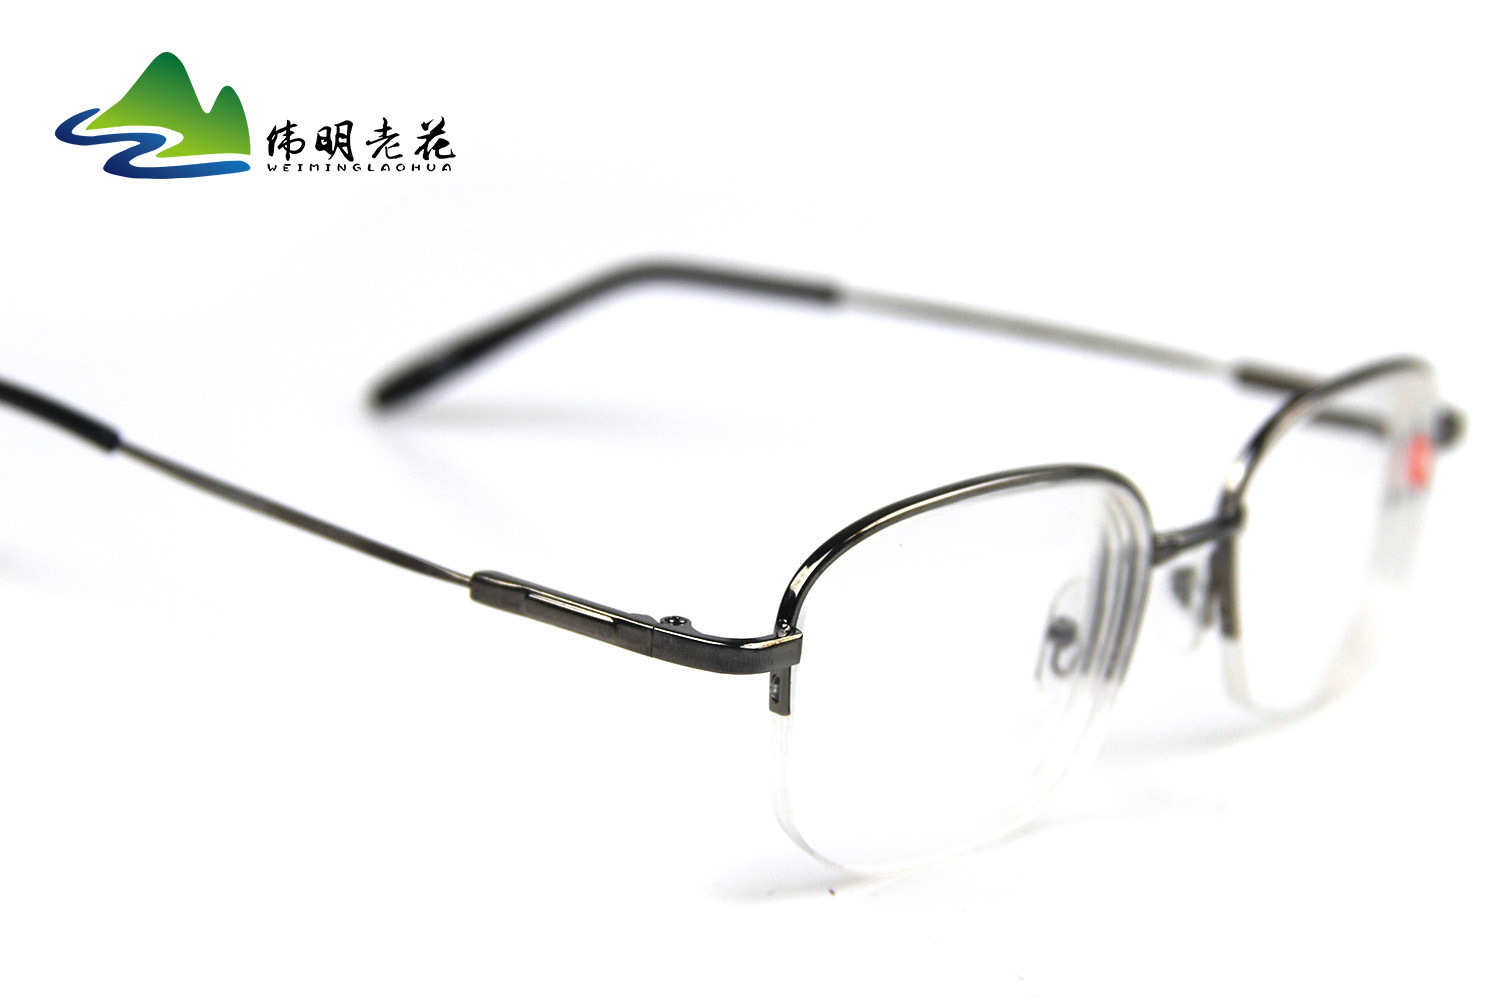 Montures de lunettes WEIMING VIEILLE FLEUR en Alliage cuivre-nickel - Ref 3140798 Image 10